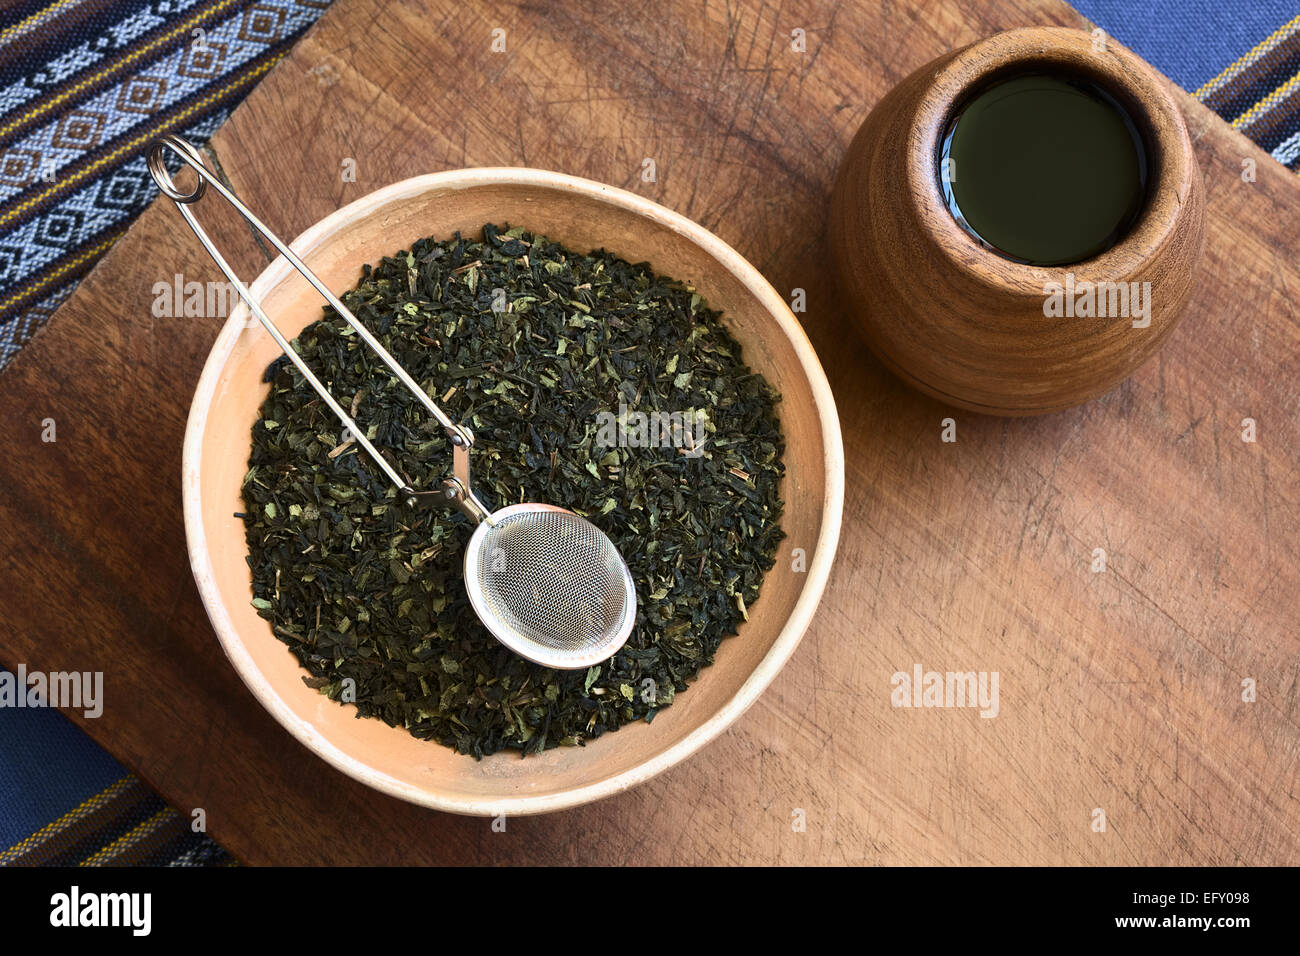 Overhead Schuss von getrockneten grünen Teeblätter in Schüssel mit einem Teesieb auf Top und hölzernen Teetasse auf der Seite Stockfoto